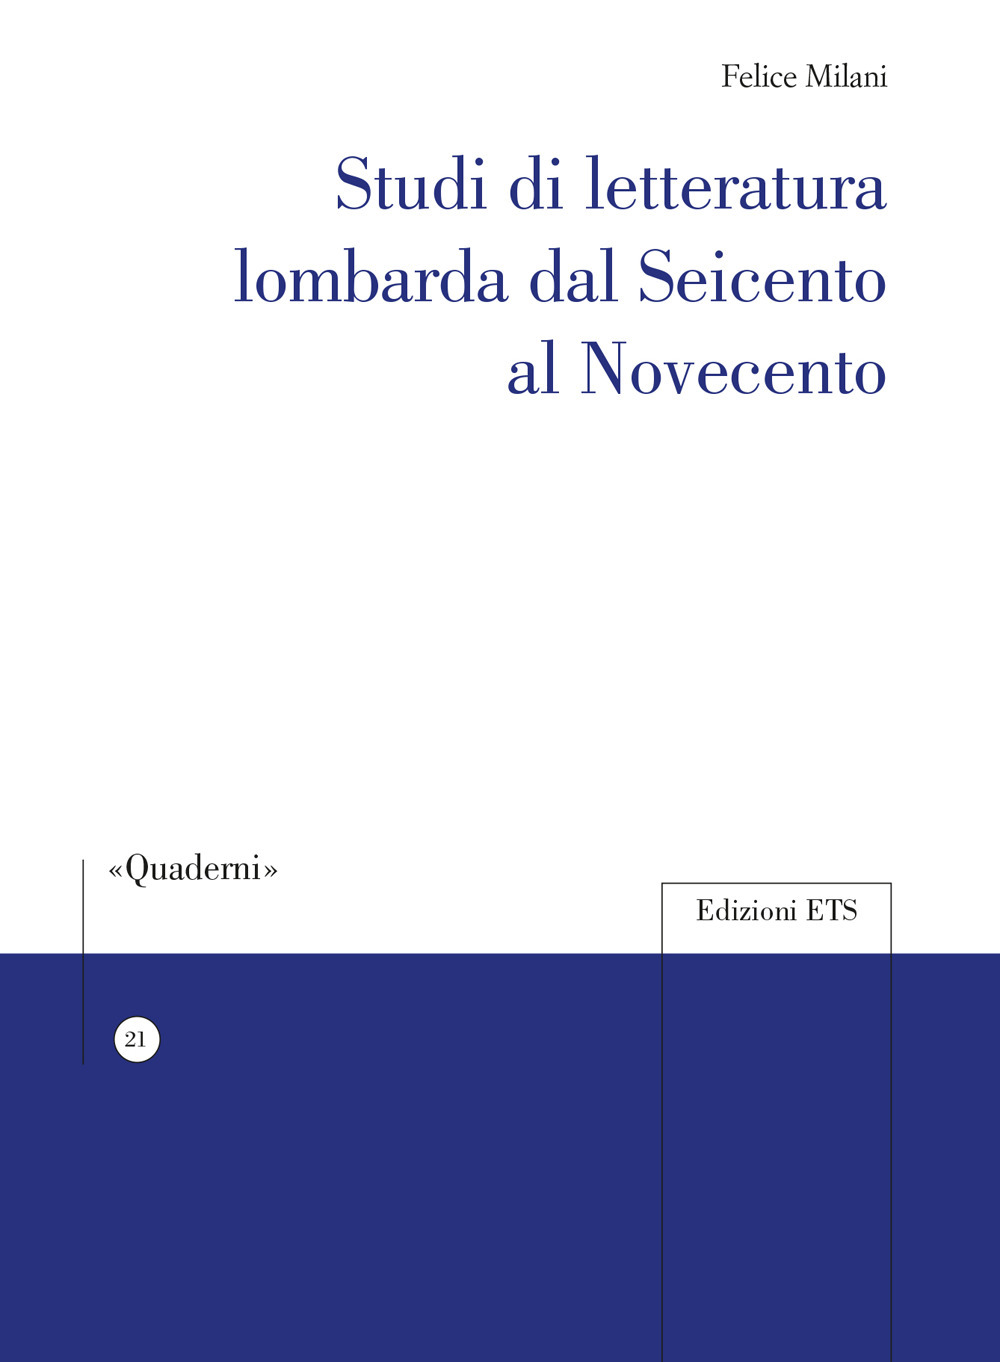 Studi di letteratura lombarda dal Seicento al Novecento